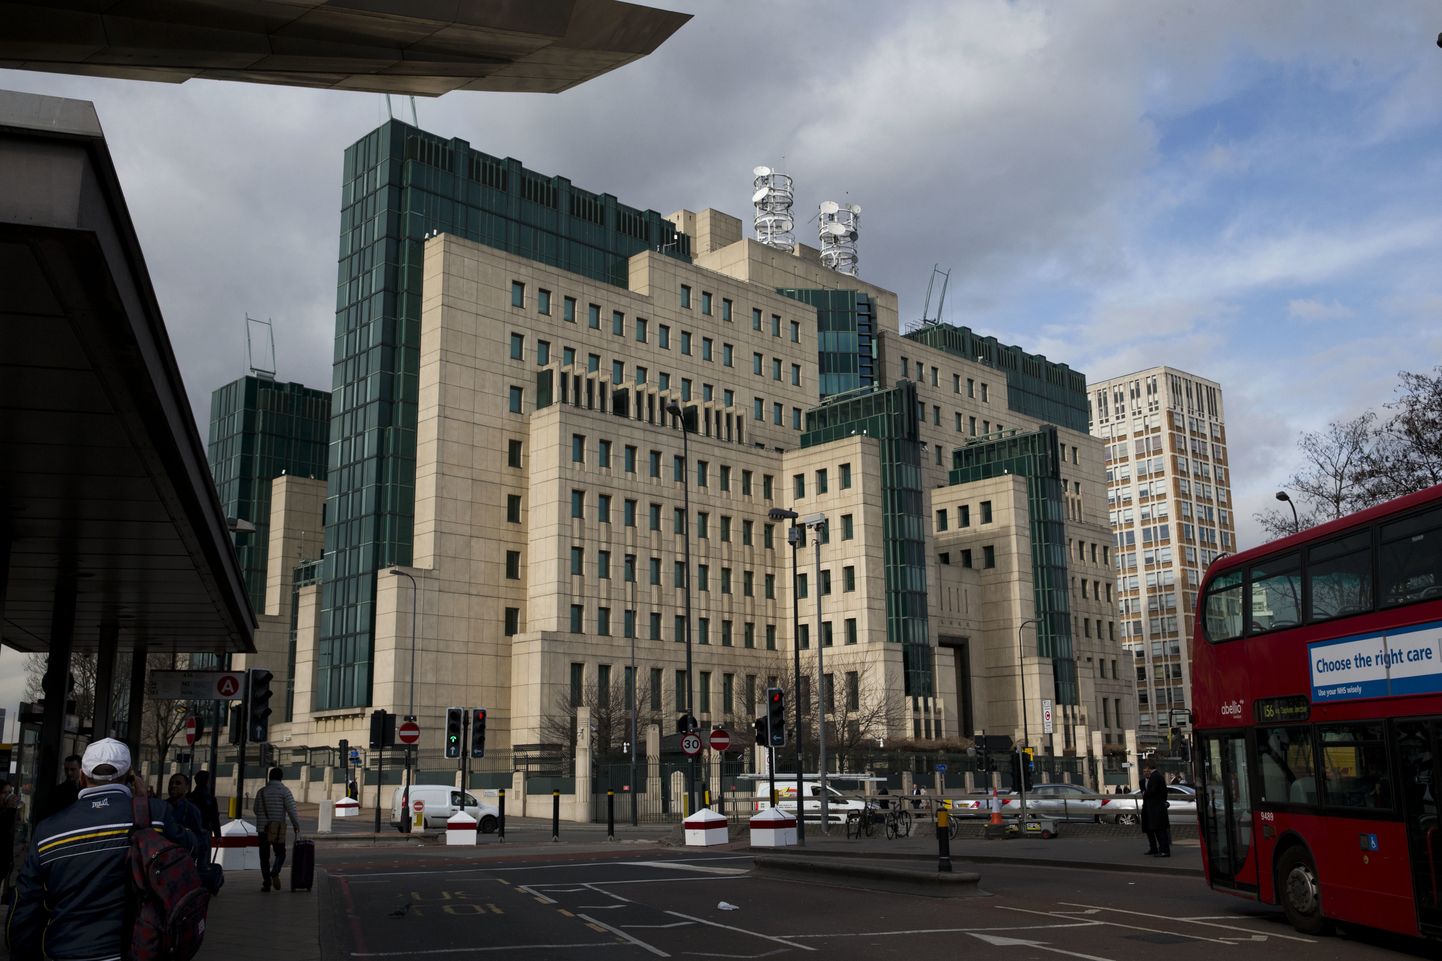 Briti välisluureameti MI6 hoone Londonis.